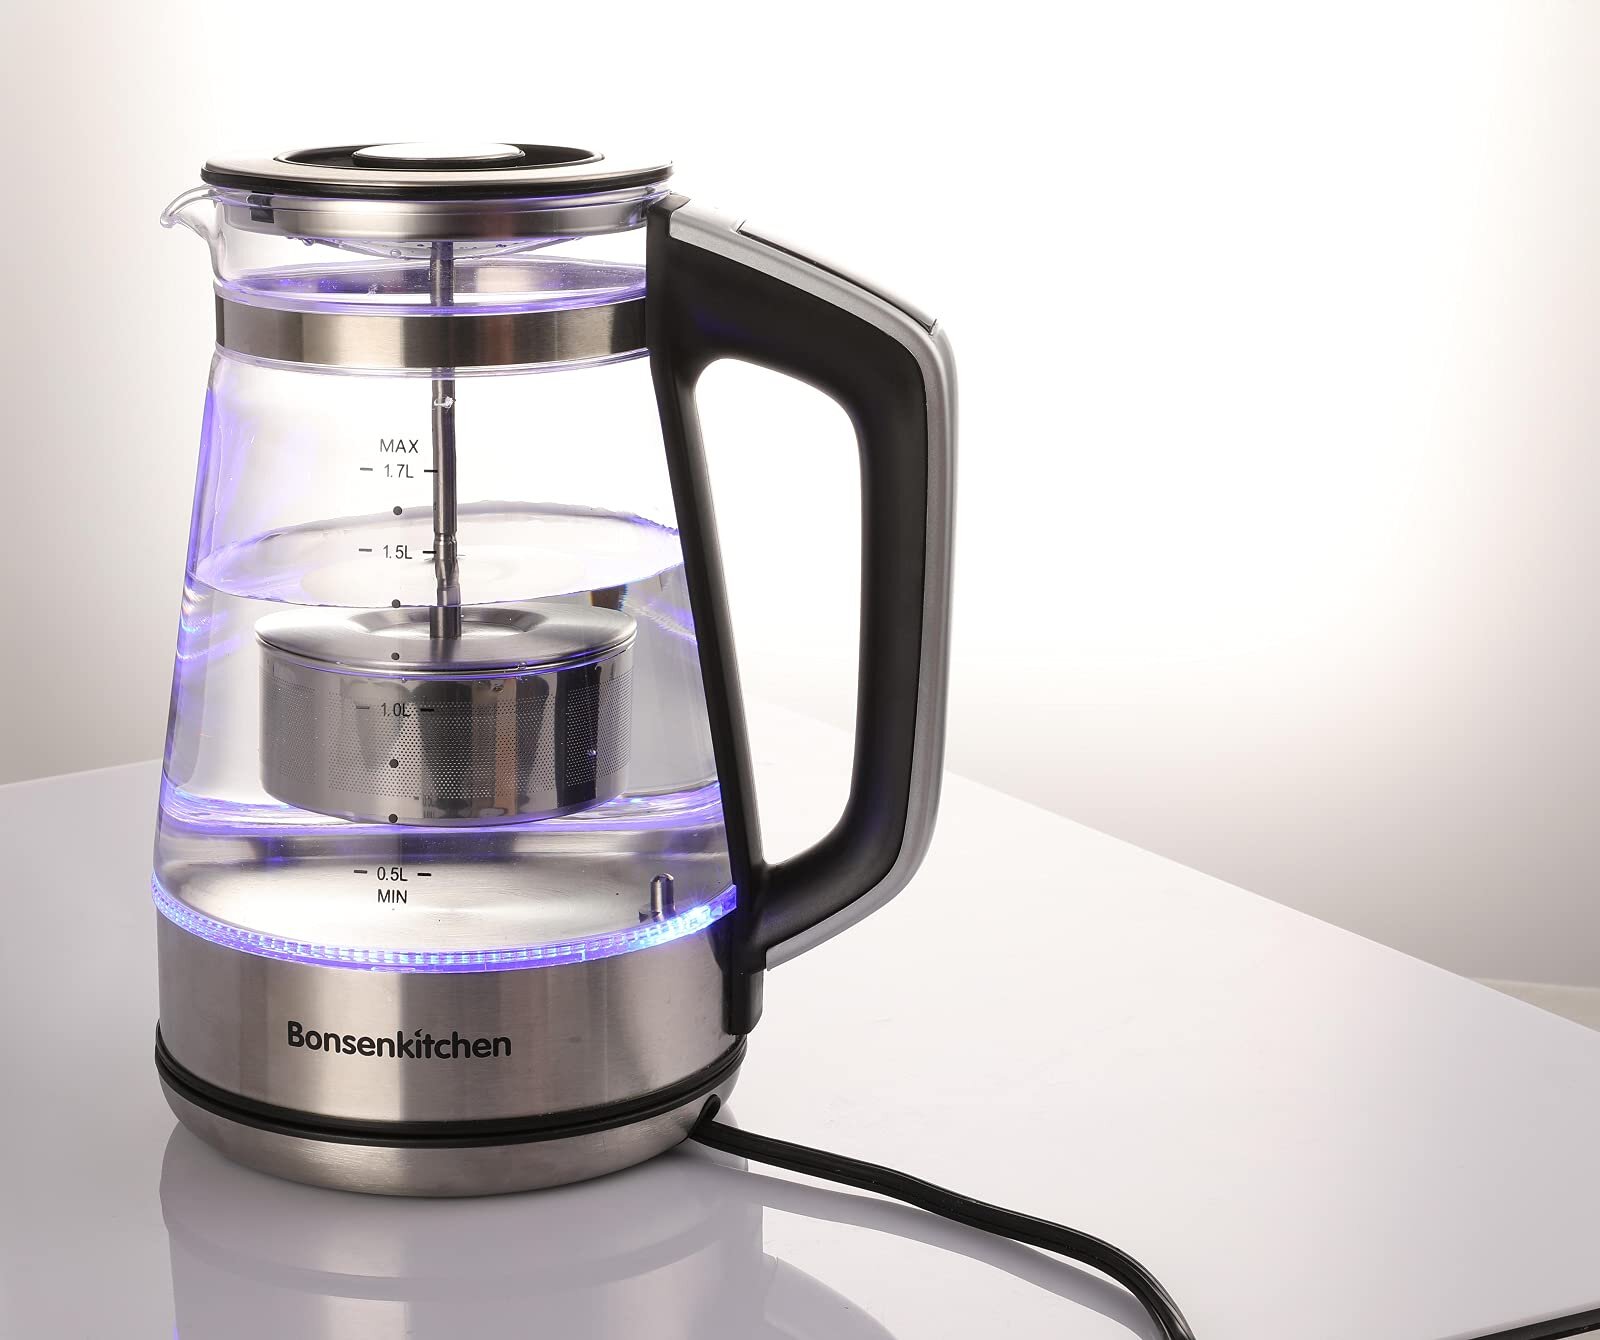 https://assets.wfcdn.com/im/56186869/compr-r85/1789/178963900/bonsenkitchen-154-quarts-glass-electric-tea-kettle.jpg